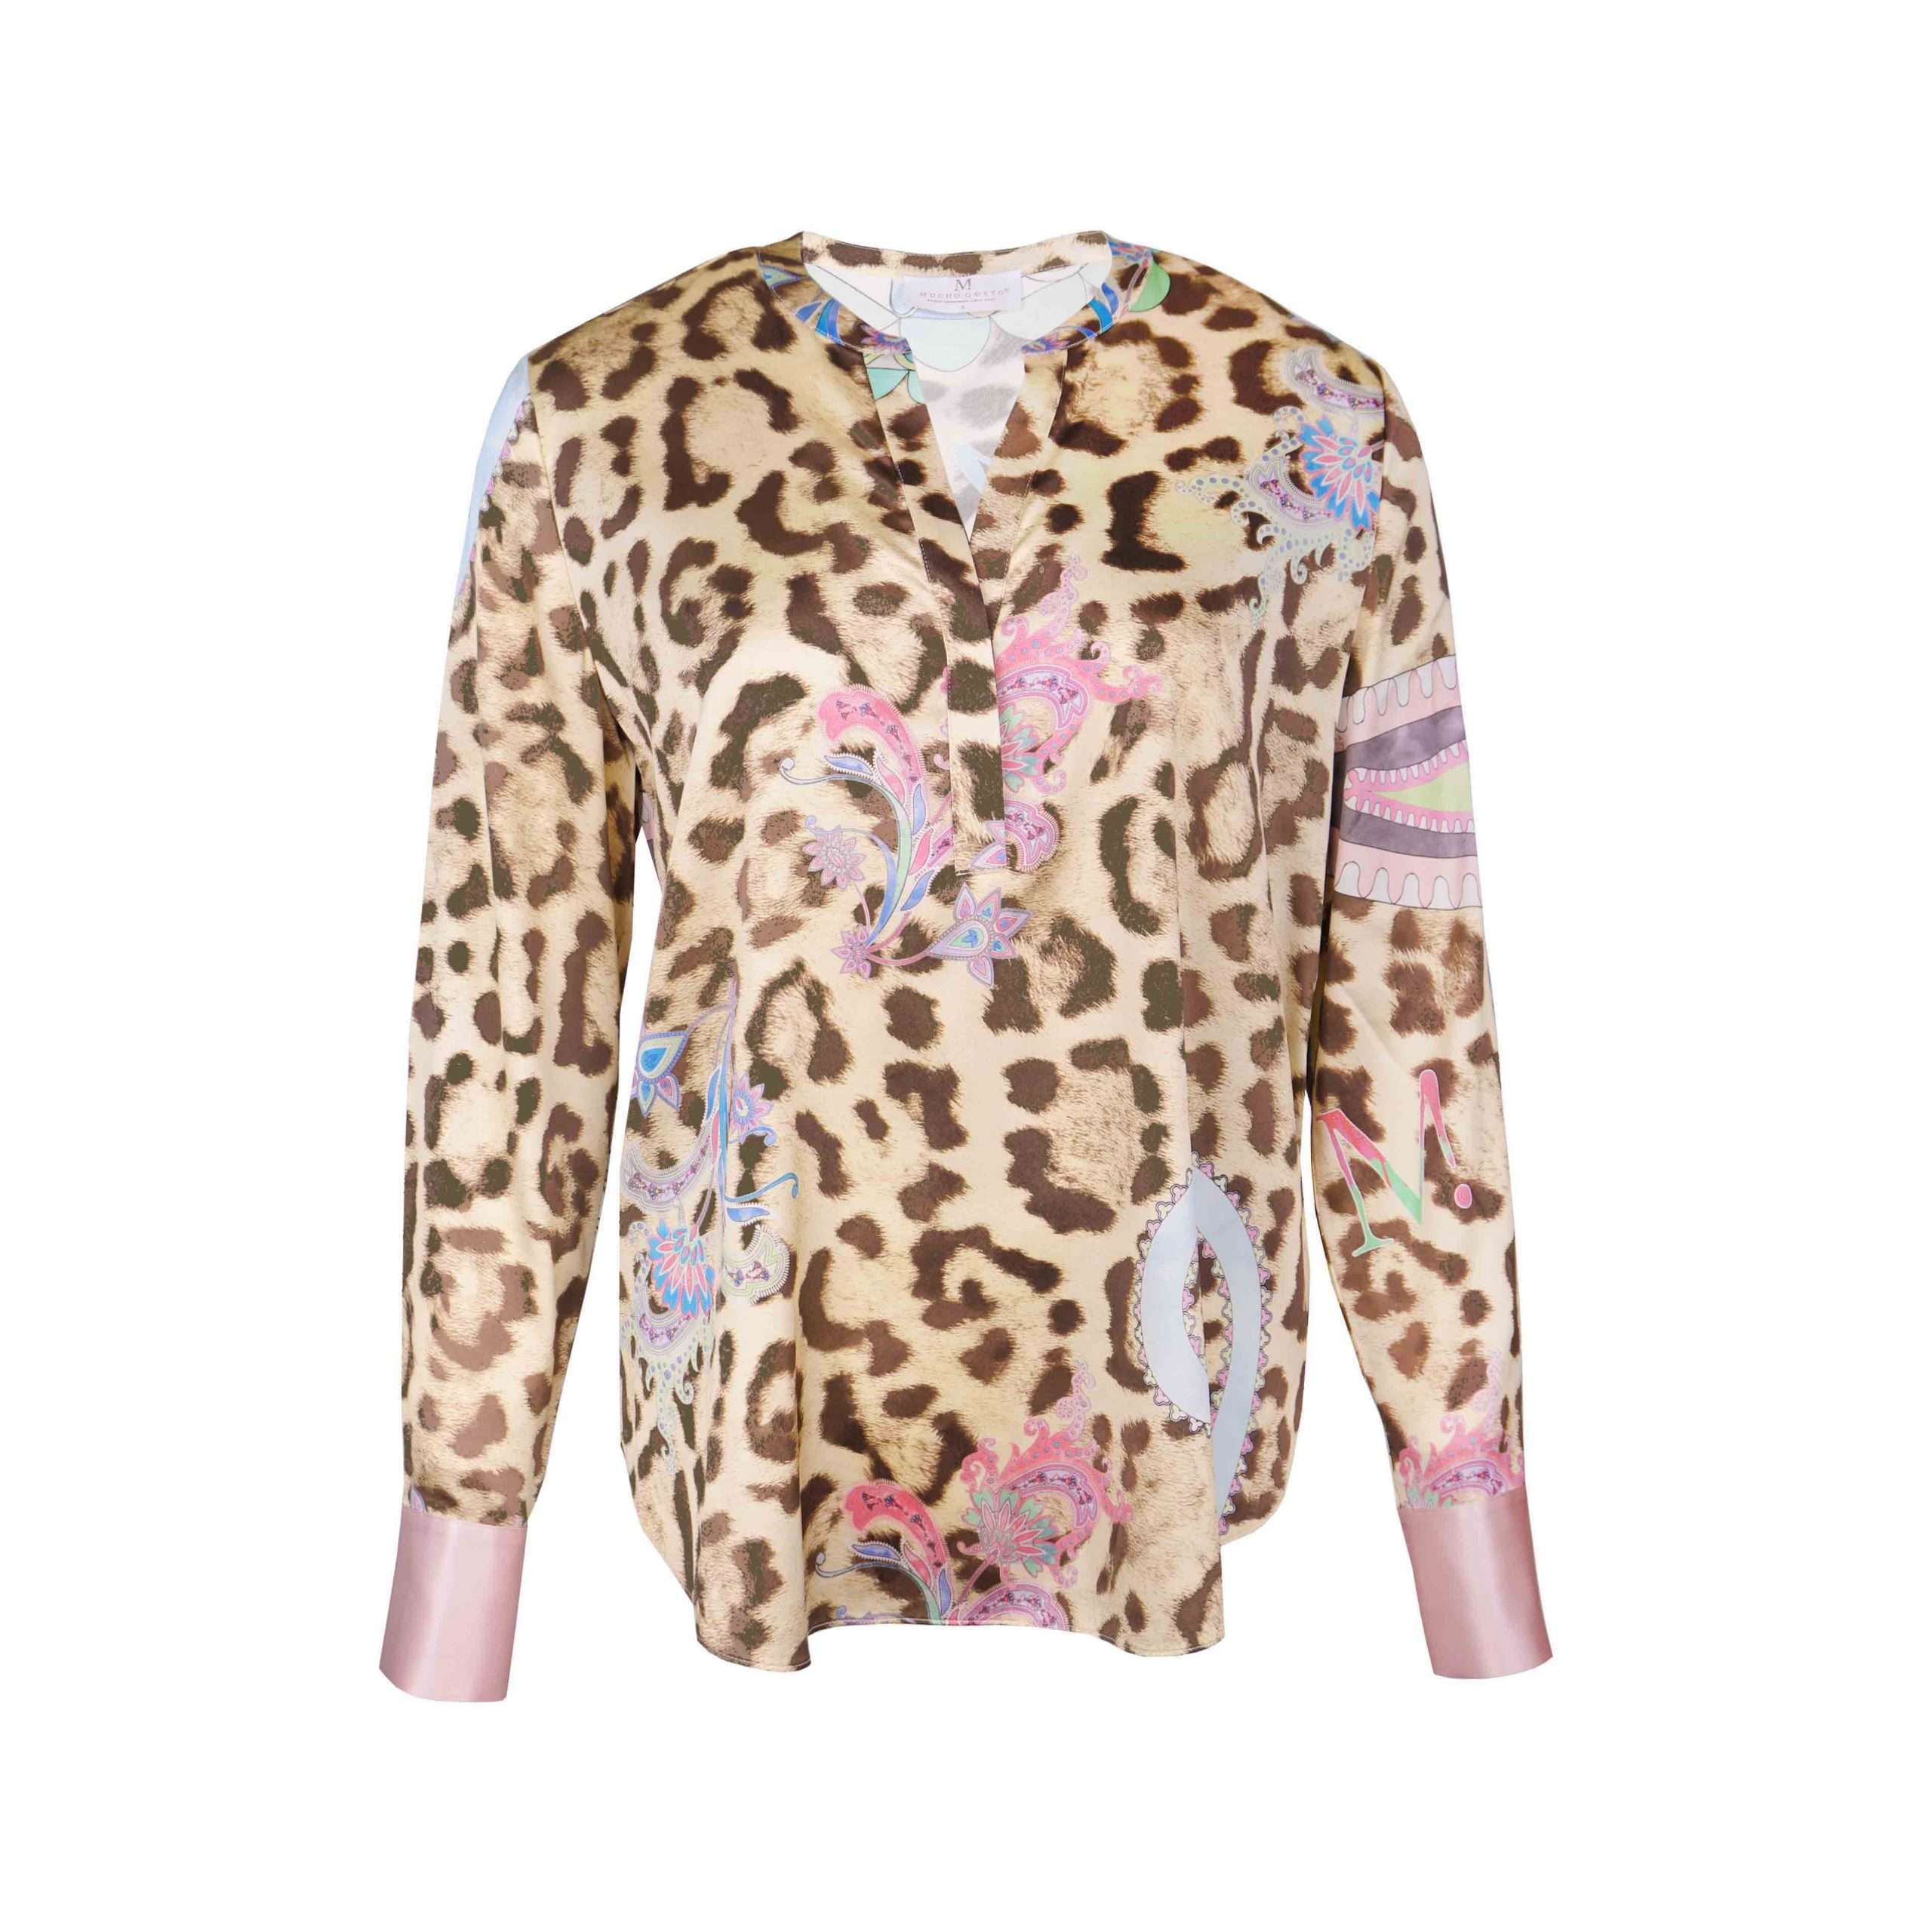 Afbeelding van Mucho Gusto Zijden blouse monza leopard and paisley